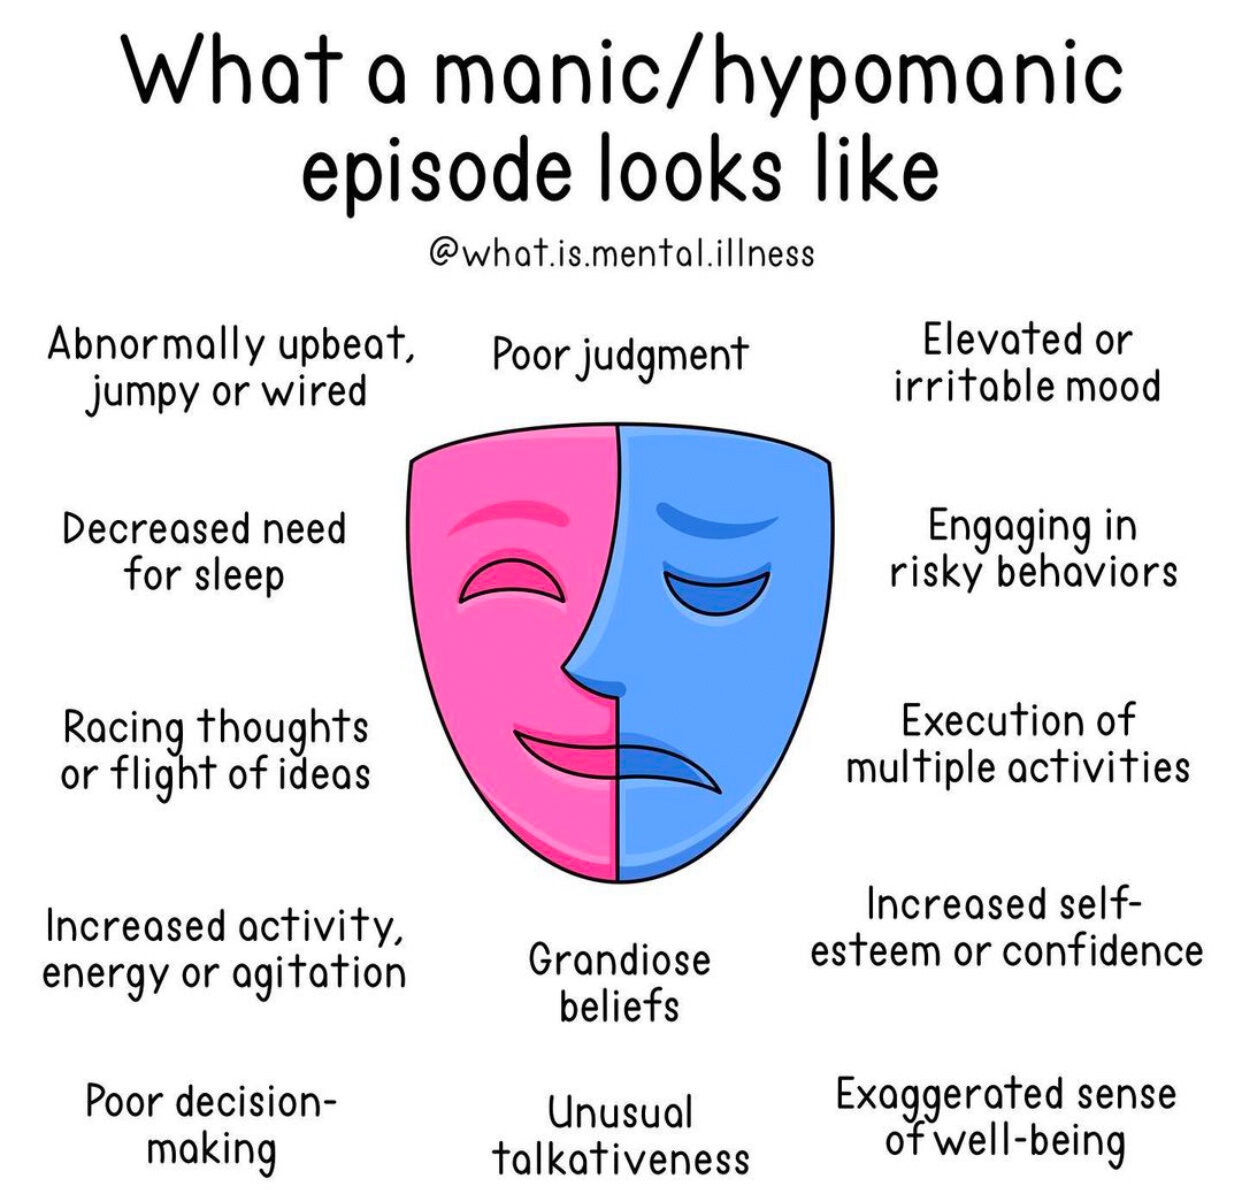 Hypomania